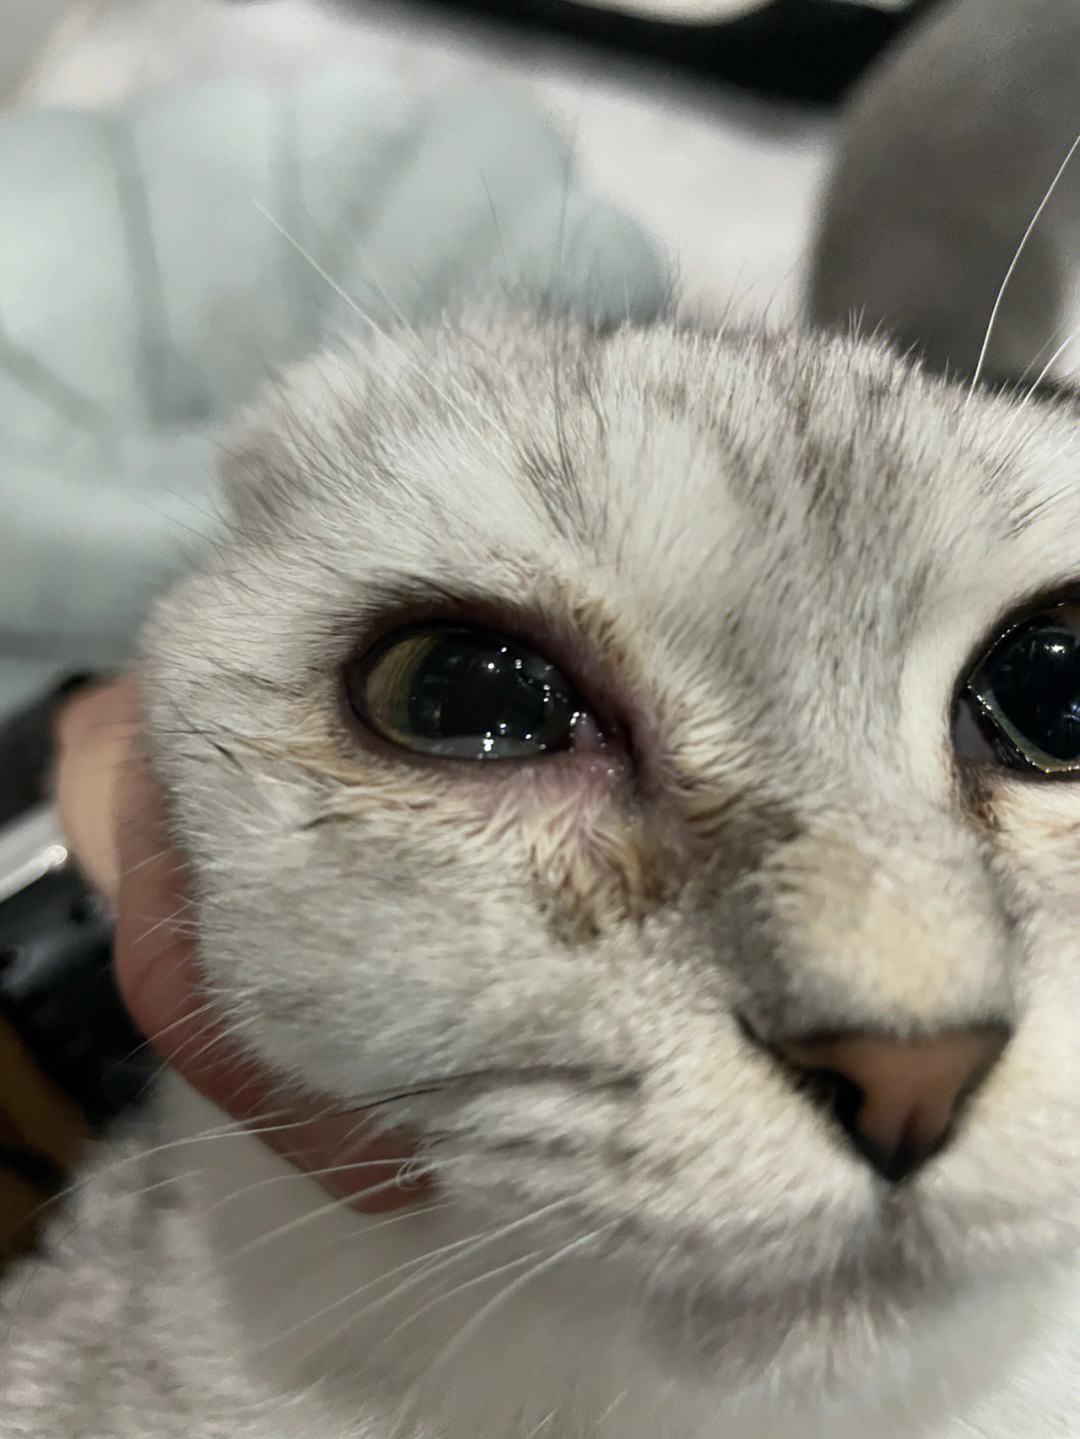 猫咪眼睛好像发炎了,该用什么药?求指教